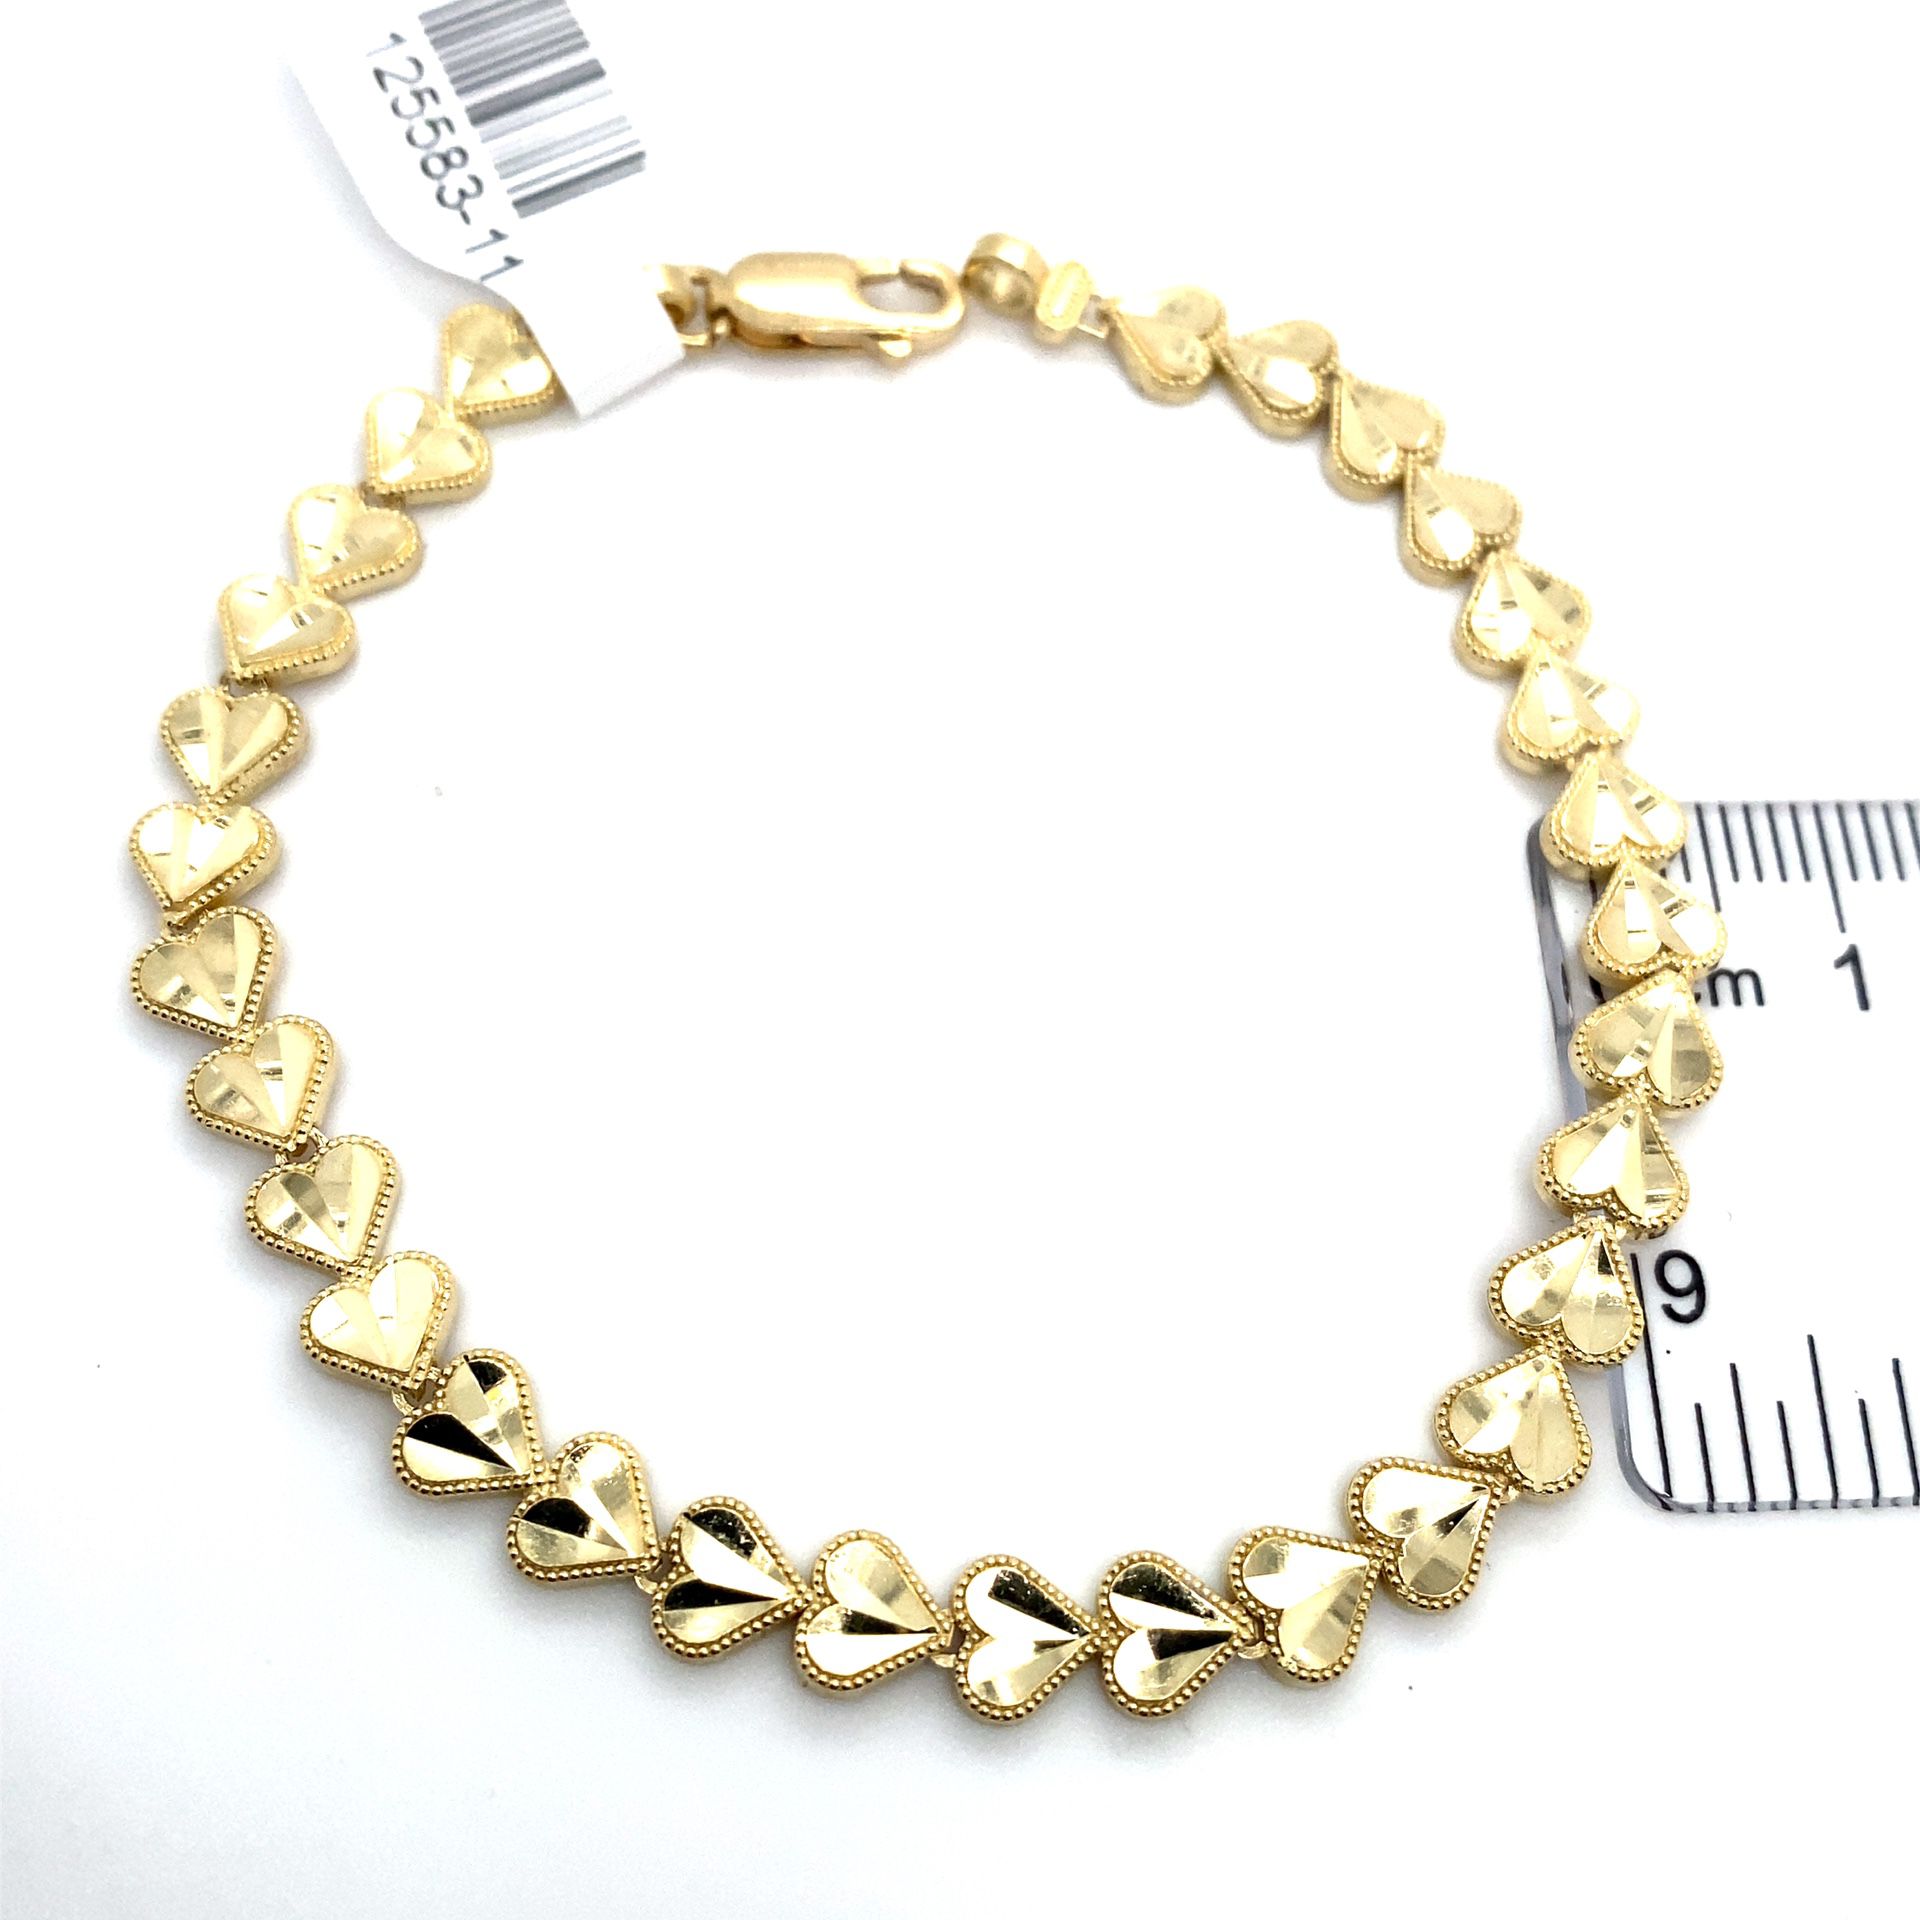 10k Gold Hearts Bracelet 6g 7 1/2” 125583 11